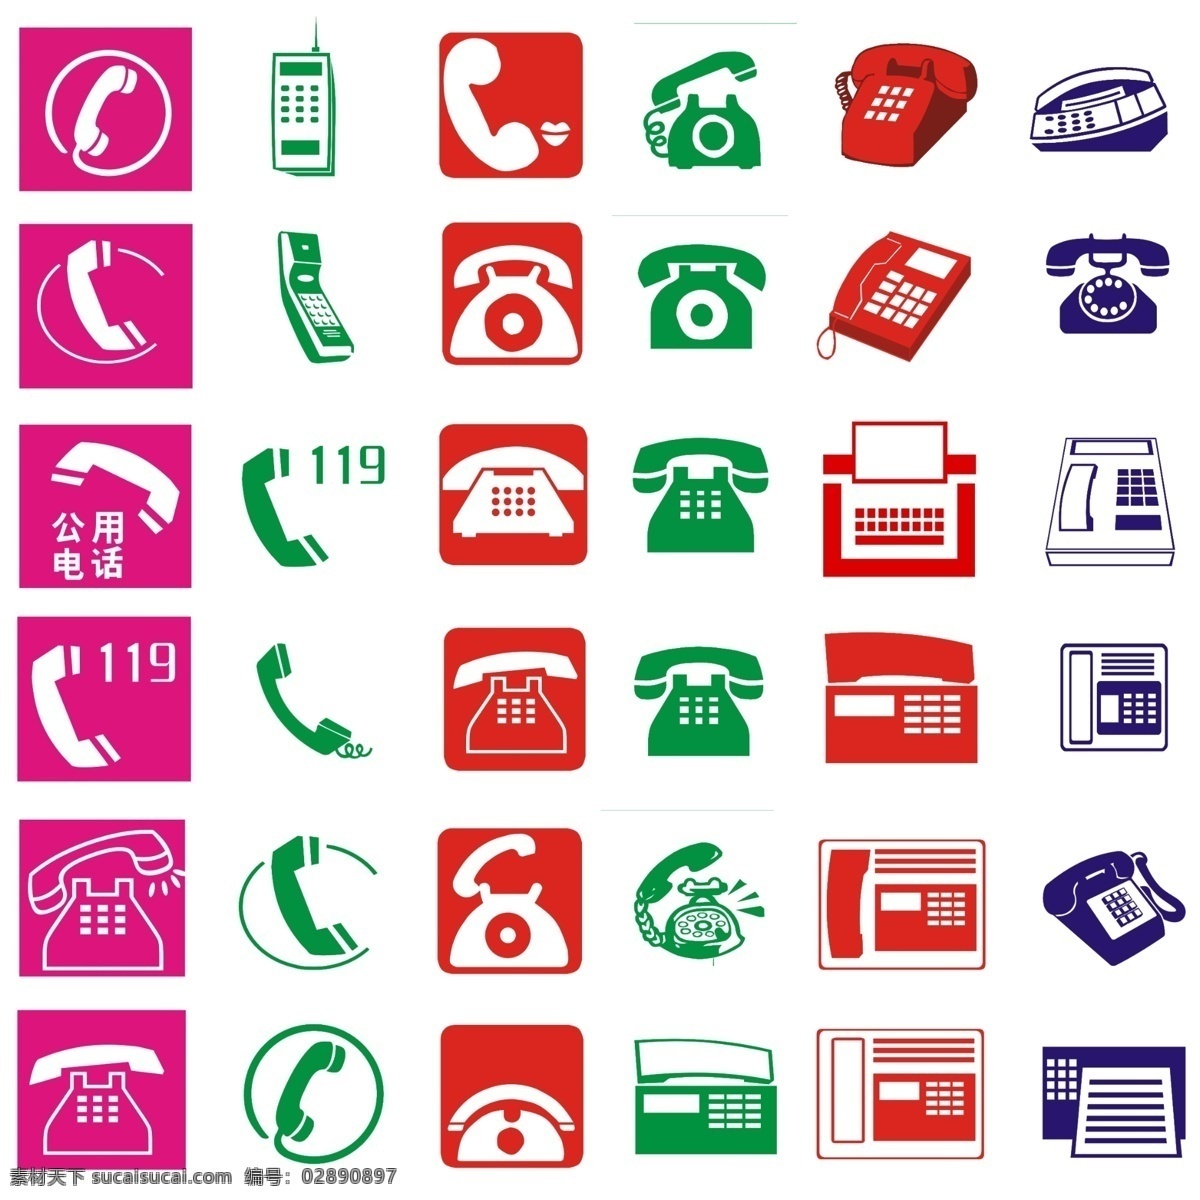 电话标志大全 电话 电话logo 标志 多类型电话 室外广告设计